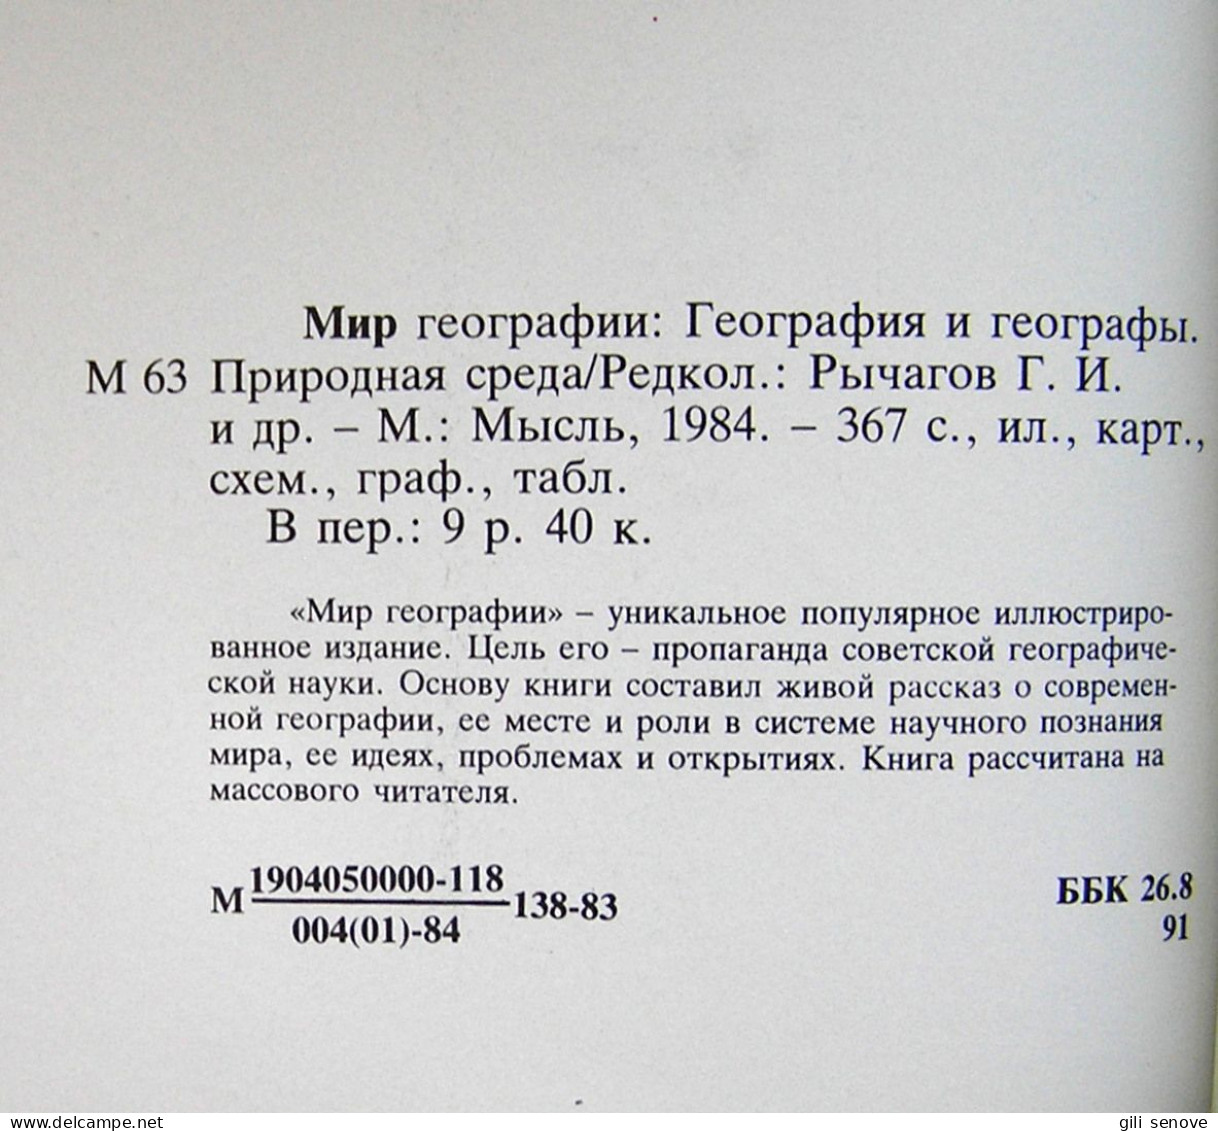 Russian Book / Мир географии 1984 - Idiomas Eslavos